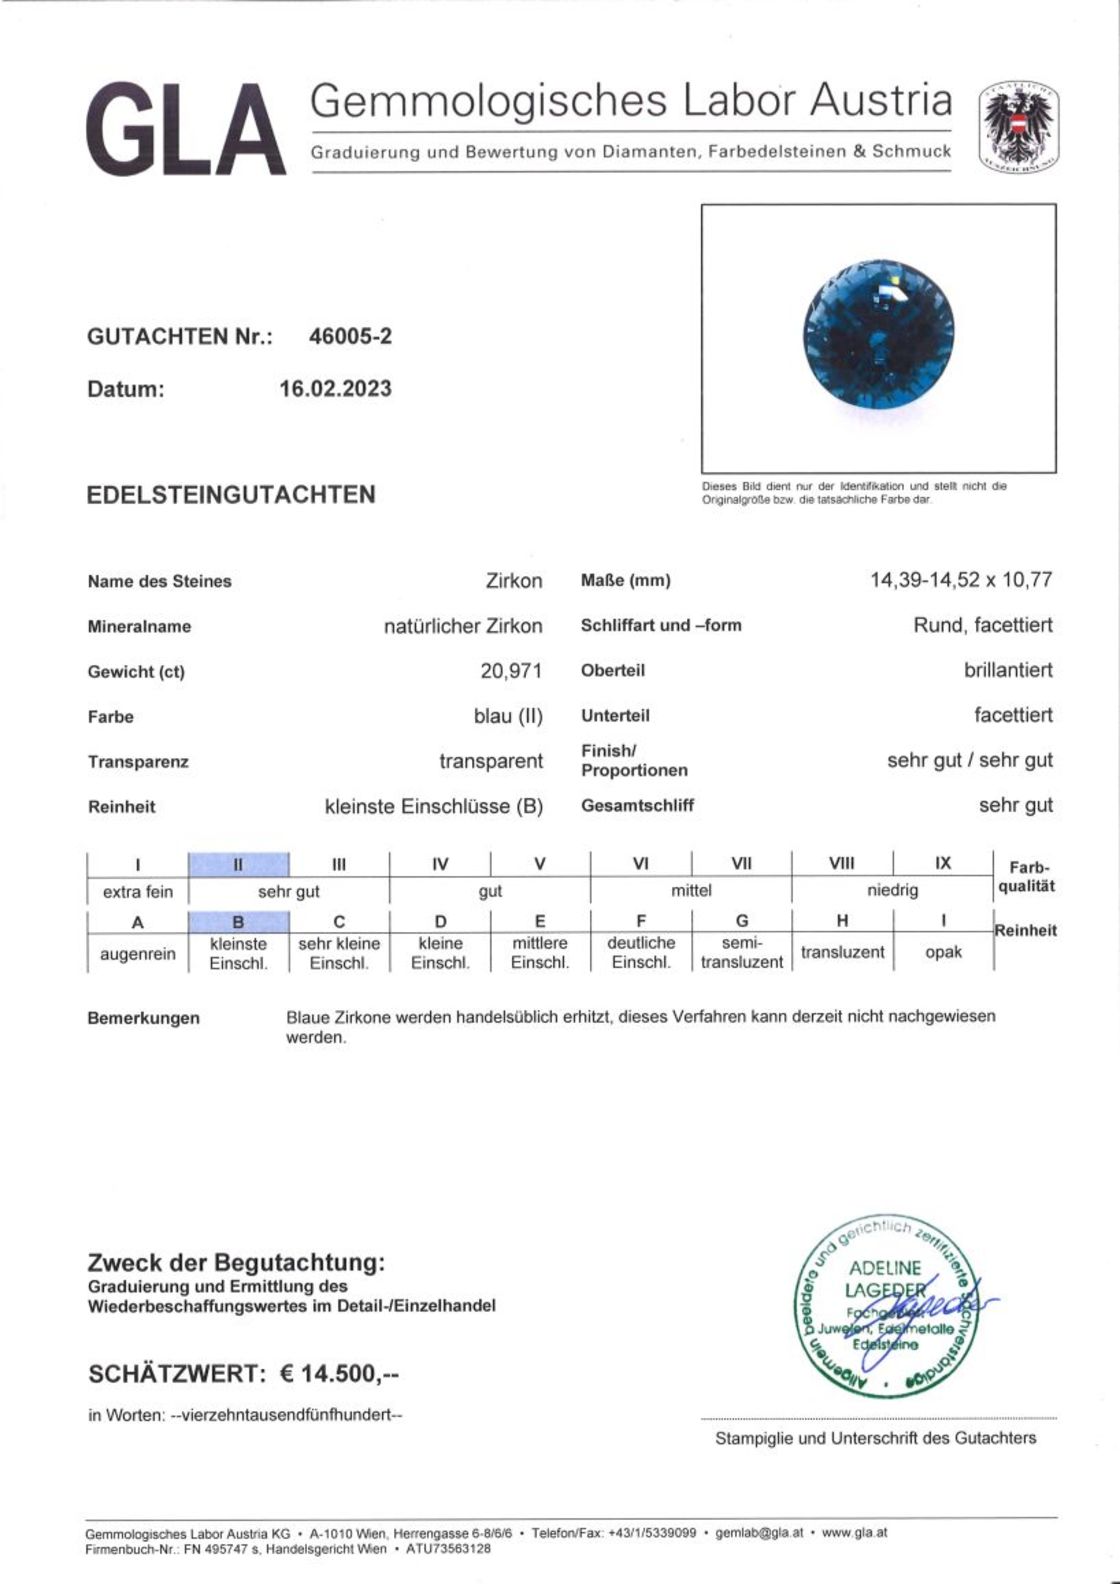 Zirkon Rundschliff blau 20,971 ct